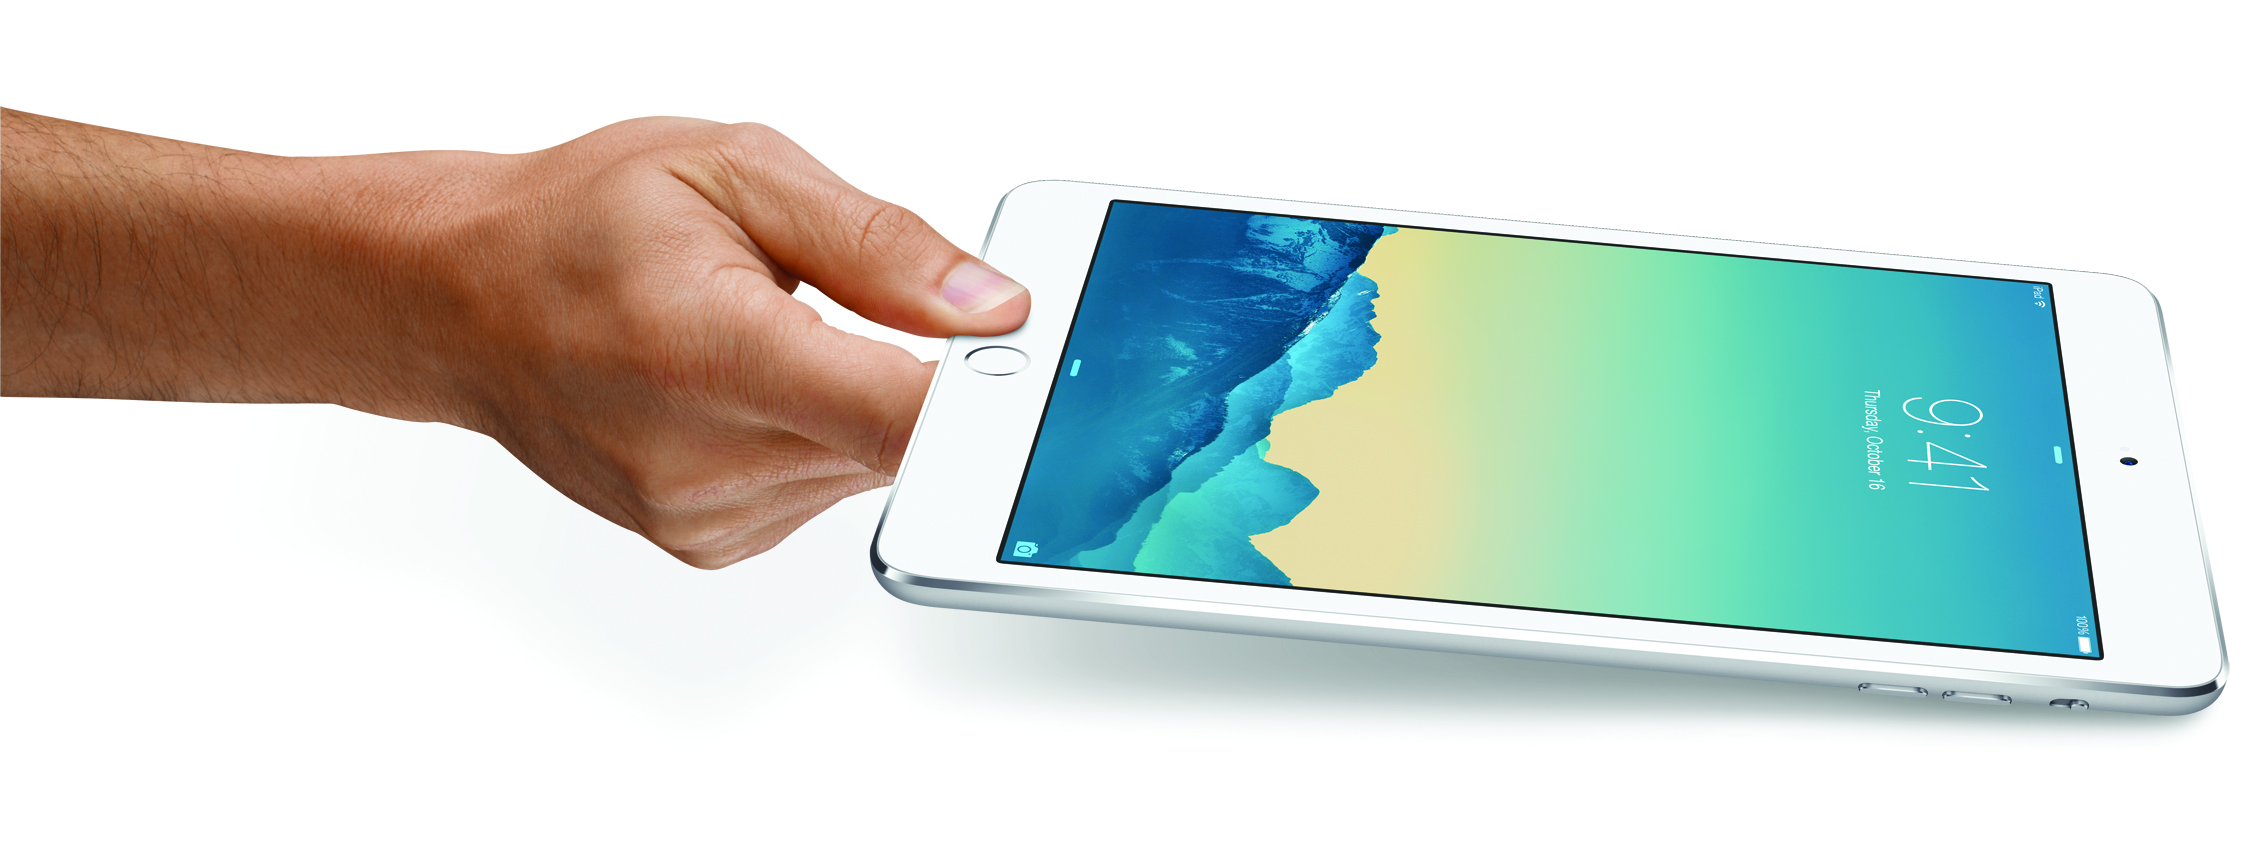 Apple iPad mini 3 Wi-Fi in all colors: 16GB $289 (Reg. $399) or